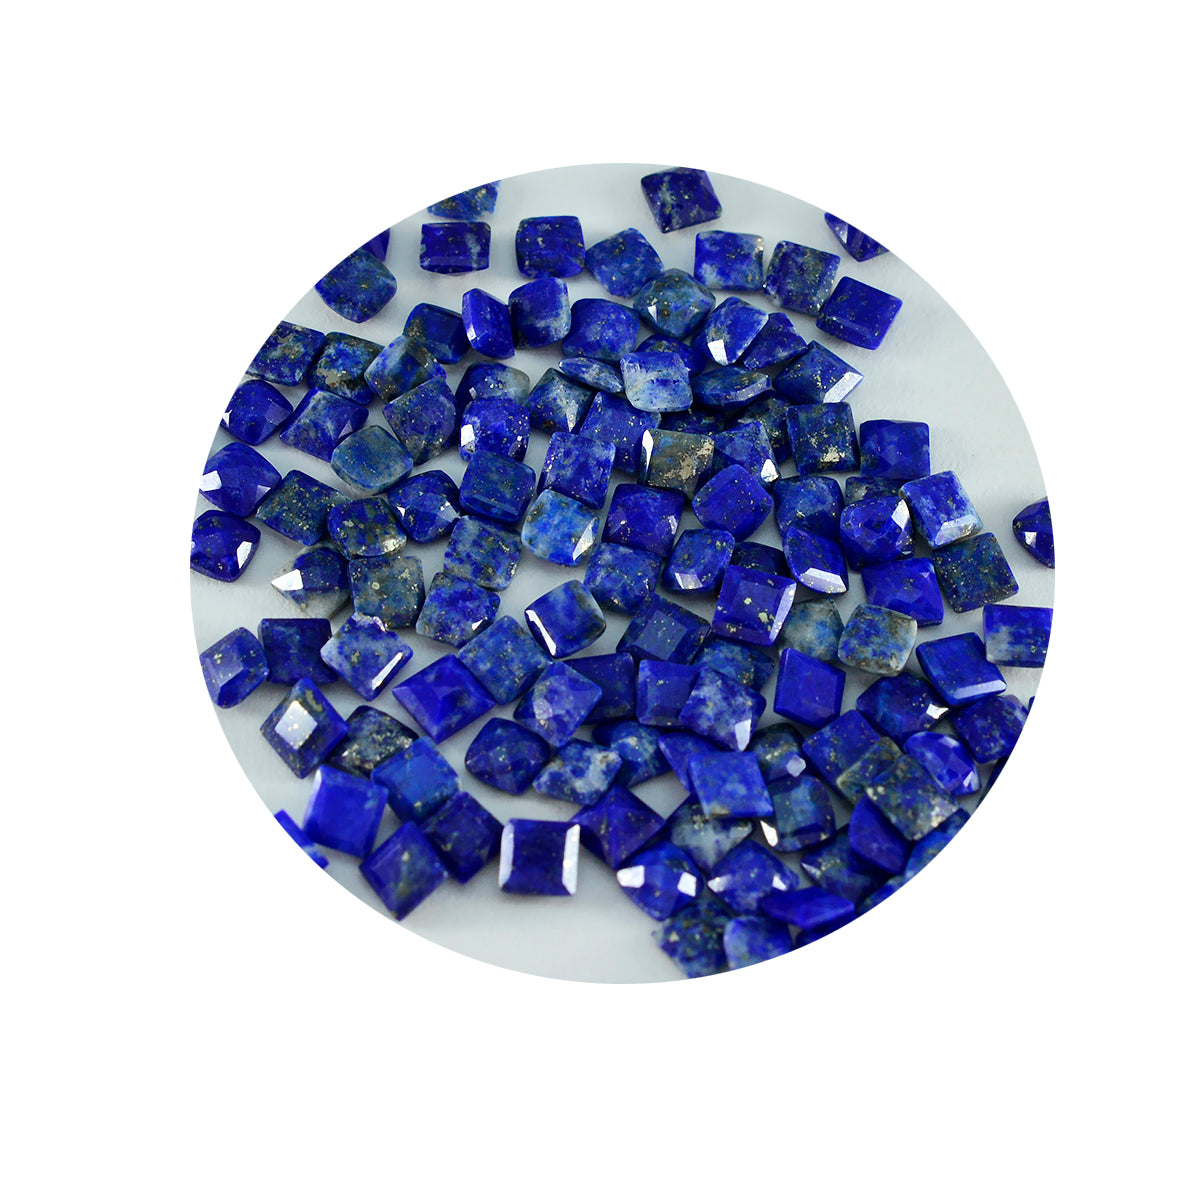 Riyogems 1PC Echte Blauwe Lapis Lazuli Facet 3x3 mm Vierkante Vorm mooie Kwaliteit Losse Edelstenen